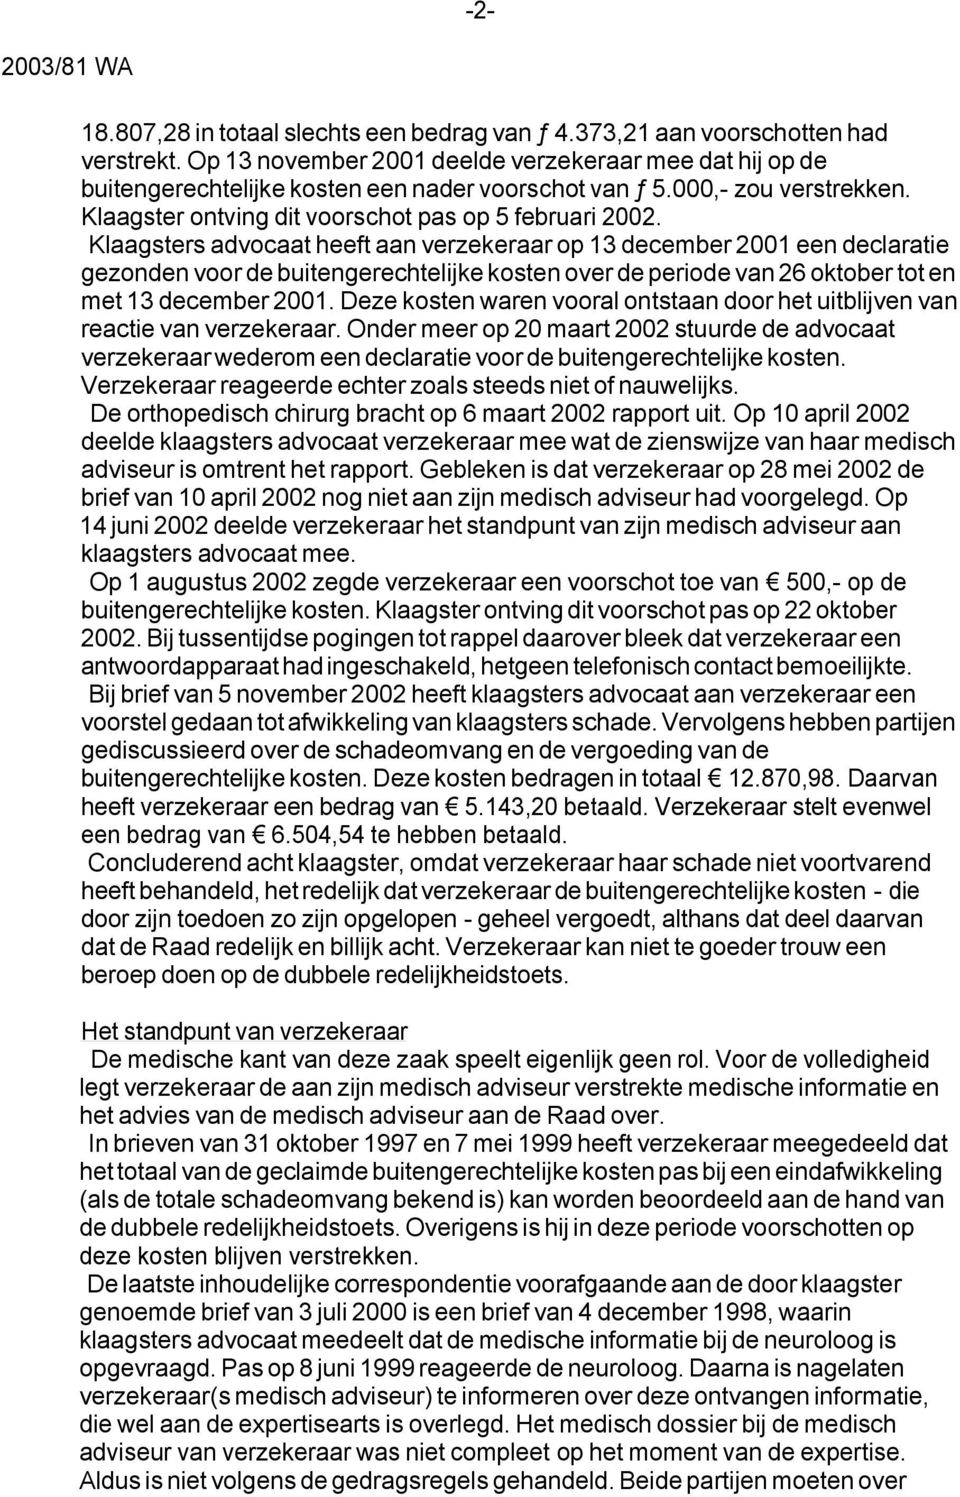 Klaagsters advocaat heeft aan verzekeraar op 13 december 2001 een declaratie gezonden voor de buitengerechtelijke kosten over de periode van 26 oktober tot en met 13 december 2001.